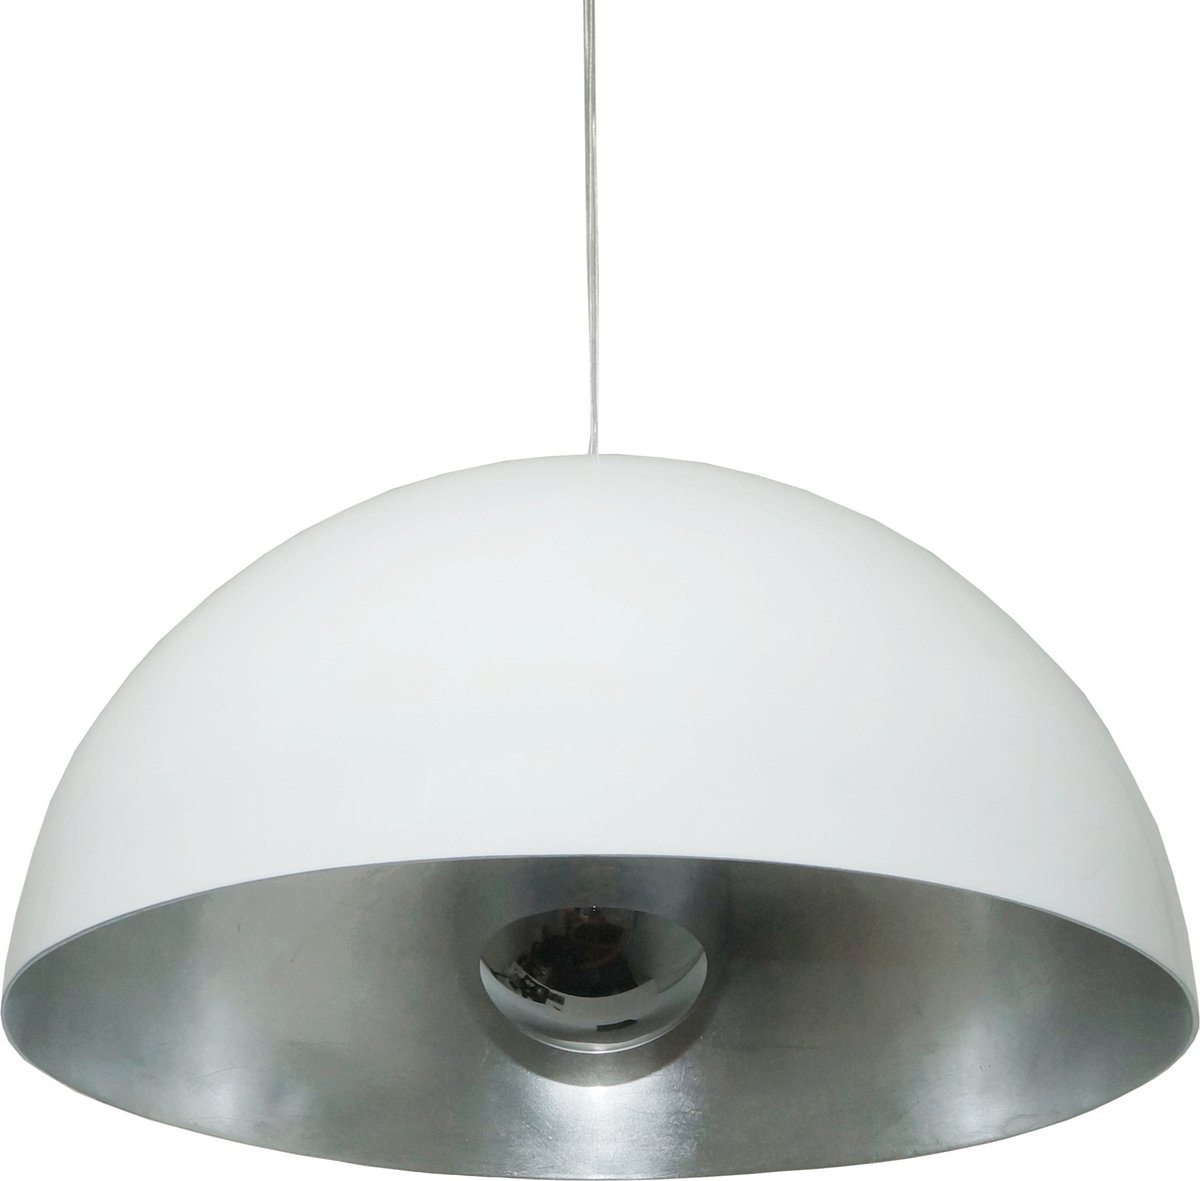 Hanglamp Gala Wit/Zilver - Ø50cm - E27 - IP20 - Dimbaar > lampen hang wit zilver | hanglamp wit zilver | hanglamp eetkamer wit zilver | hanglamp keuken wit zilver | led lamp wit zilver | sfeer lamp wit zilver